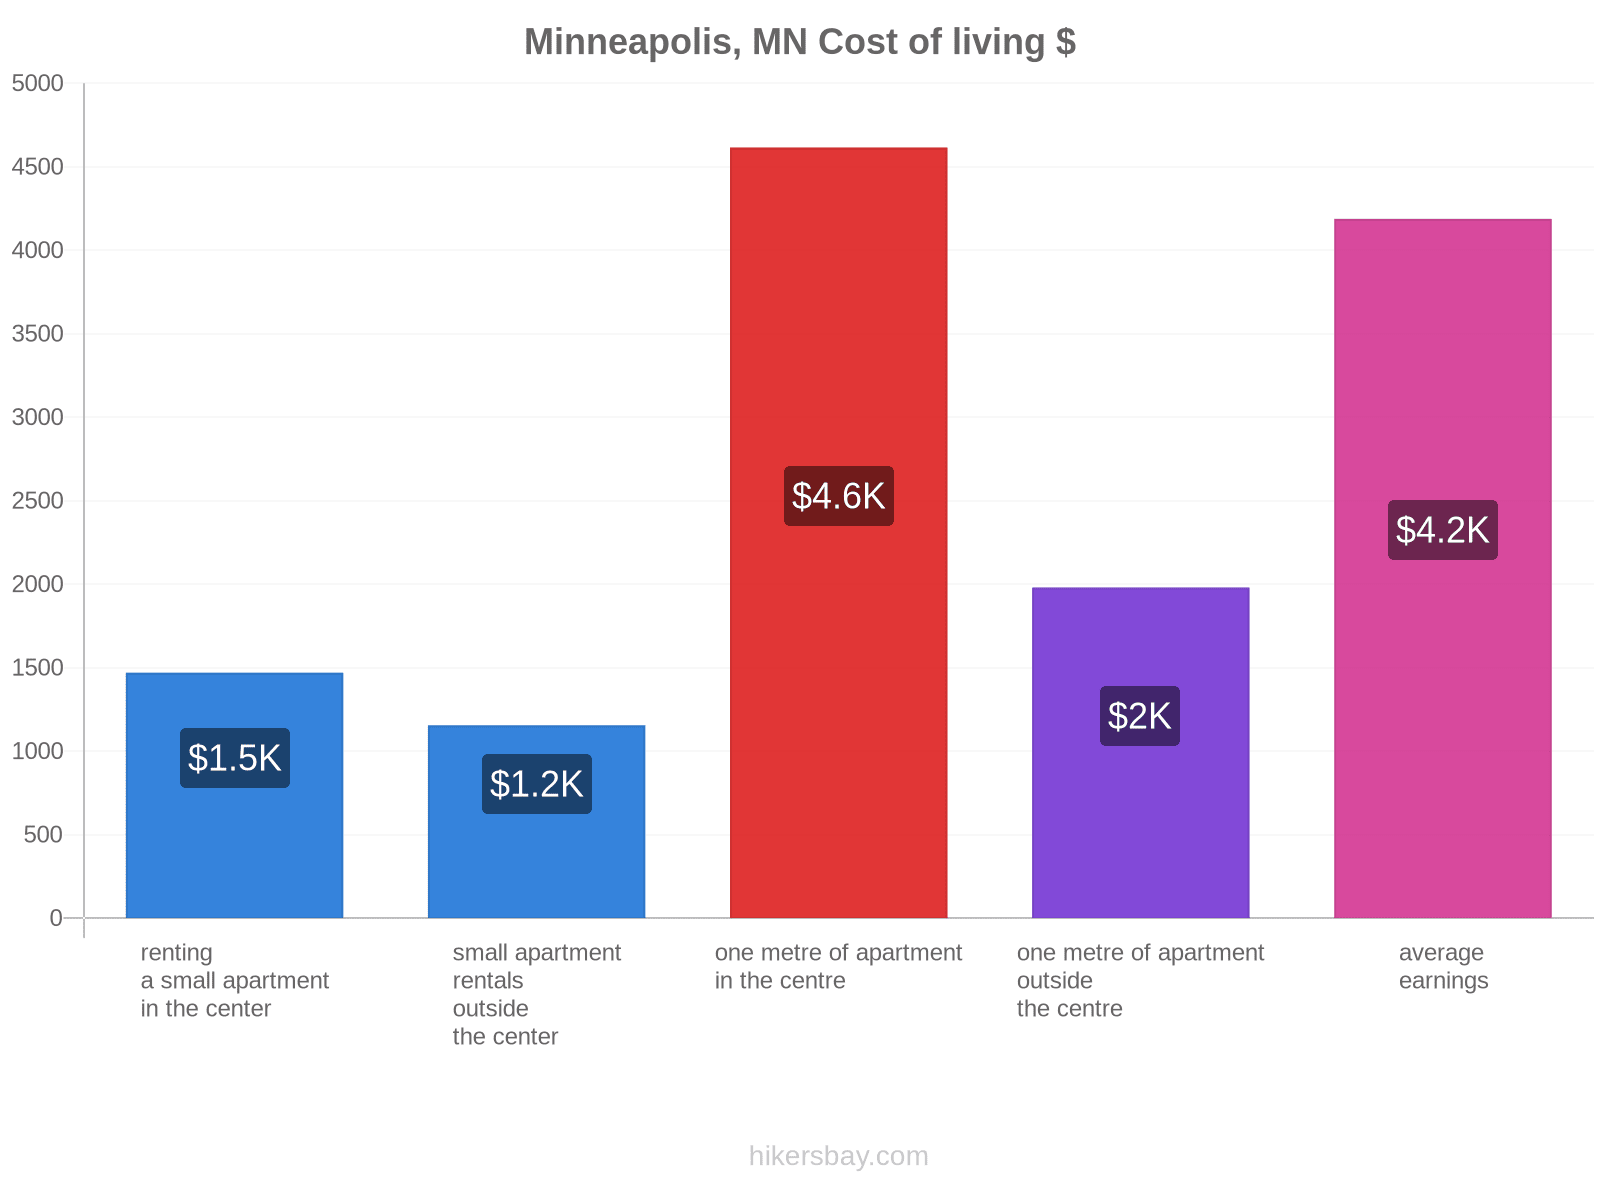 Minneapolis, MN cost of living hikersbay.com